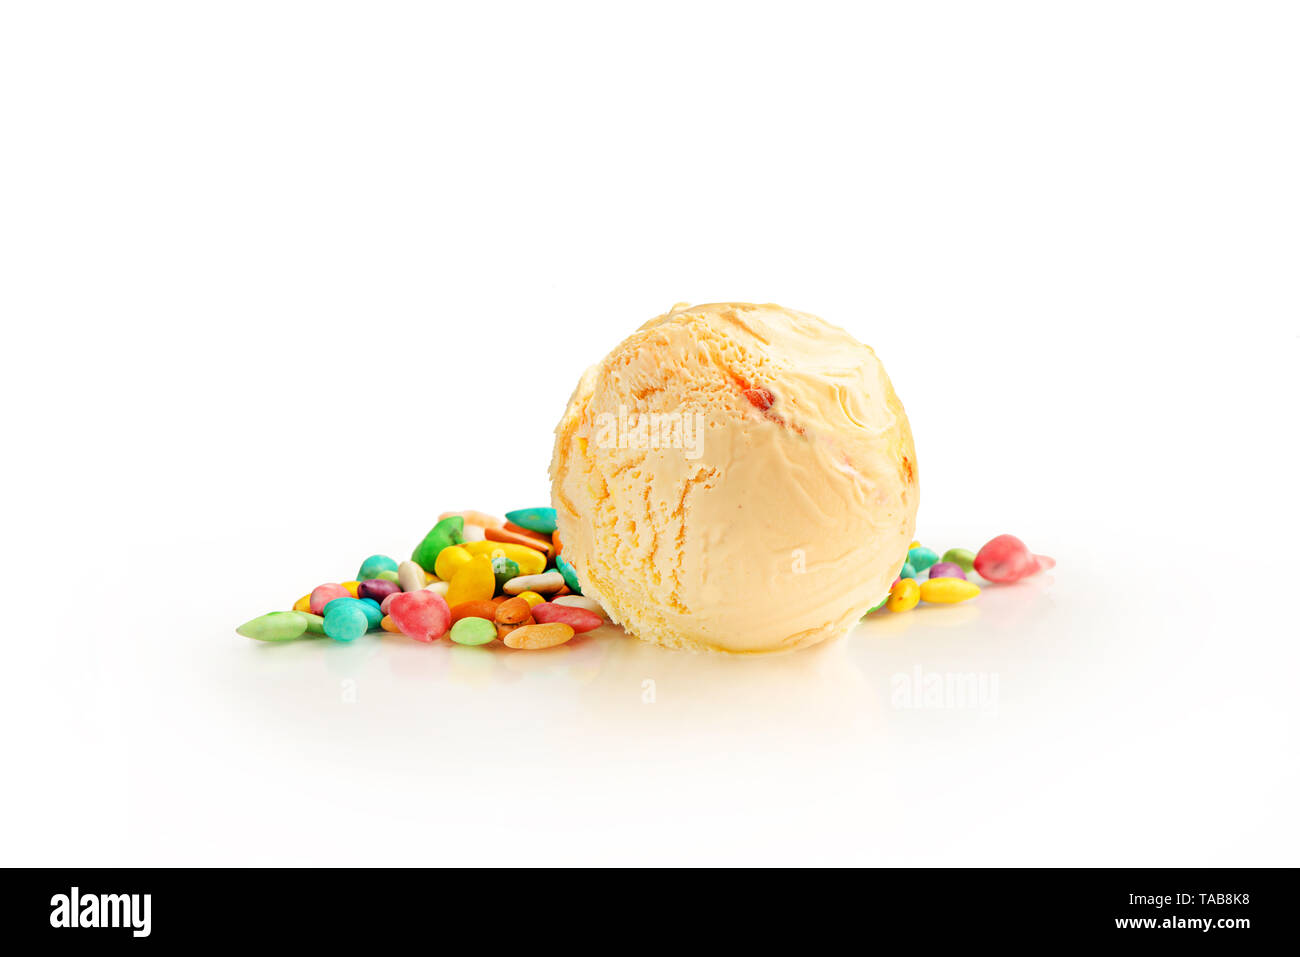 Ice cream ball, saveur de fruits confits avec des ingrédients, isolé sur un fond blanc. Banque D'Images